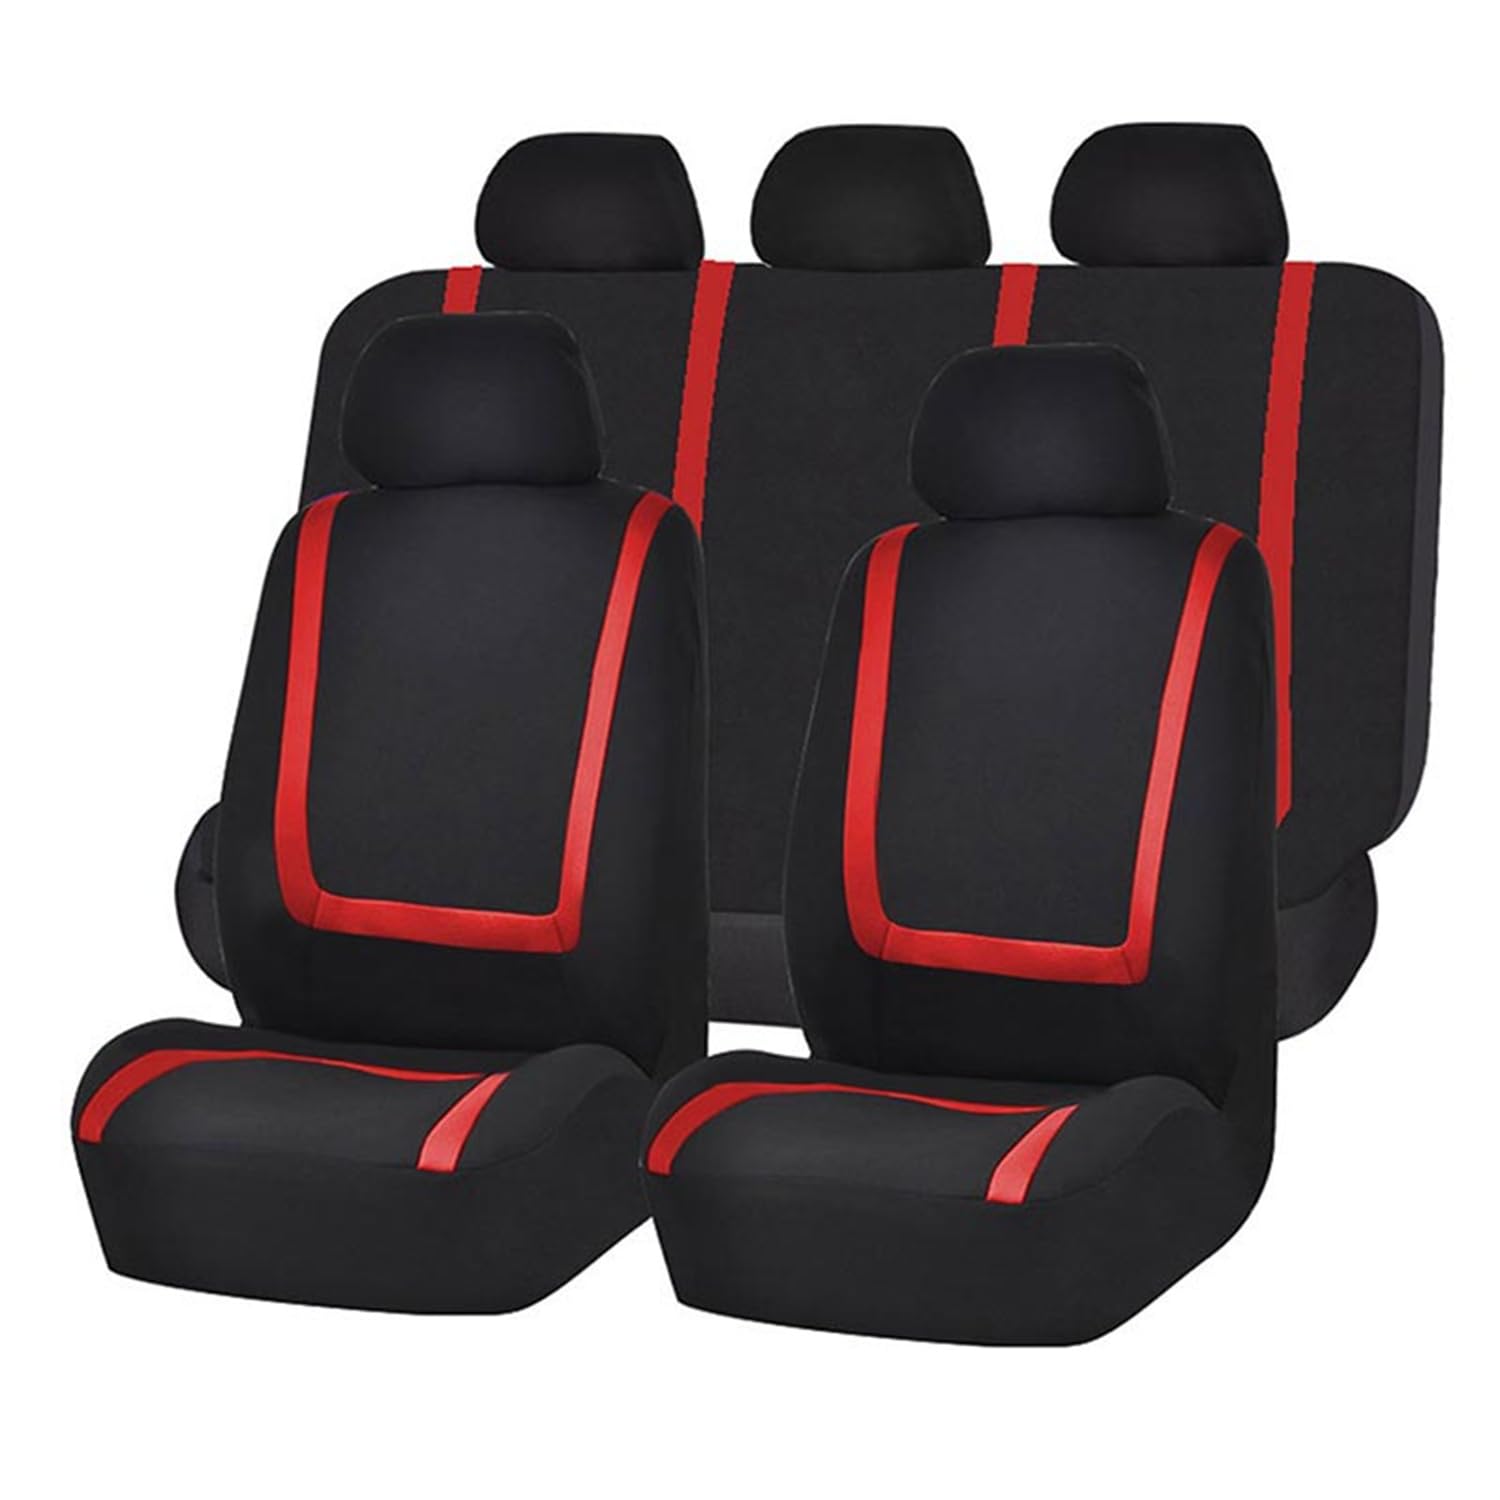 LeiBaOF 9-teiliges Allwetter-Sitzbezug-Set,rutschfest,wasserdicht,atmungsaktiv,Sitzkissenschutz für Suzuki S- Cross,B-black red von LeiBaOF